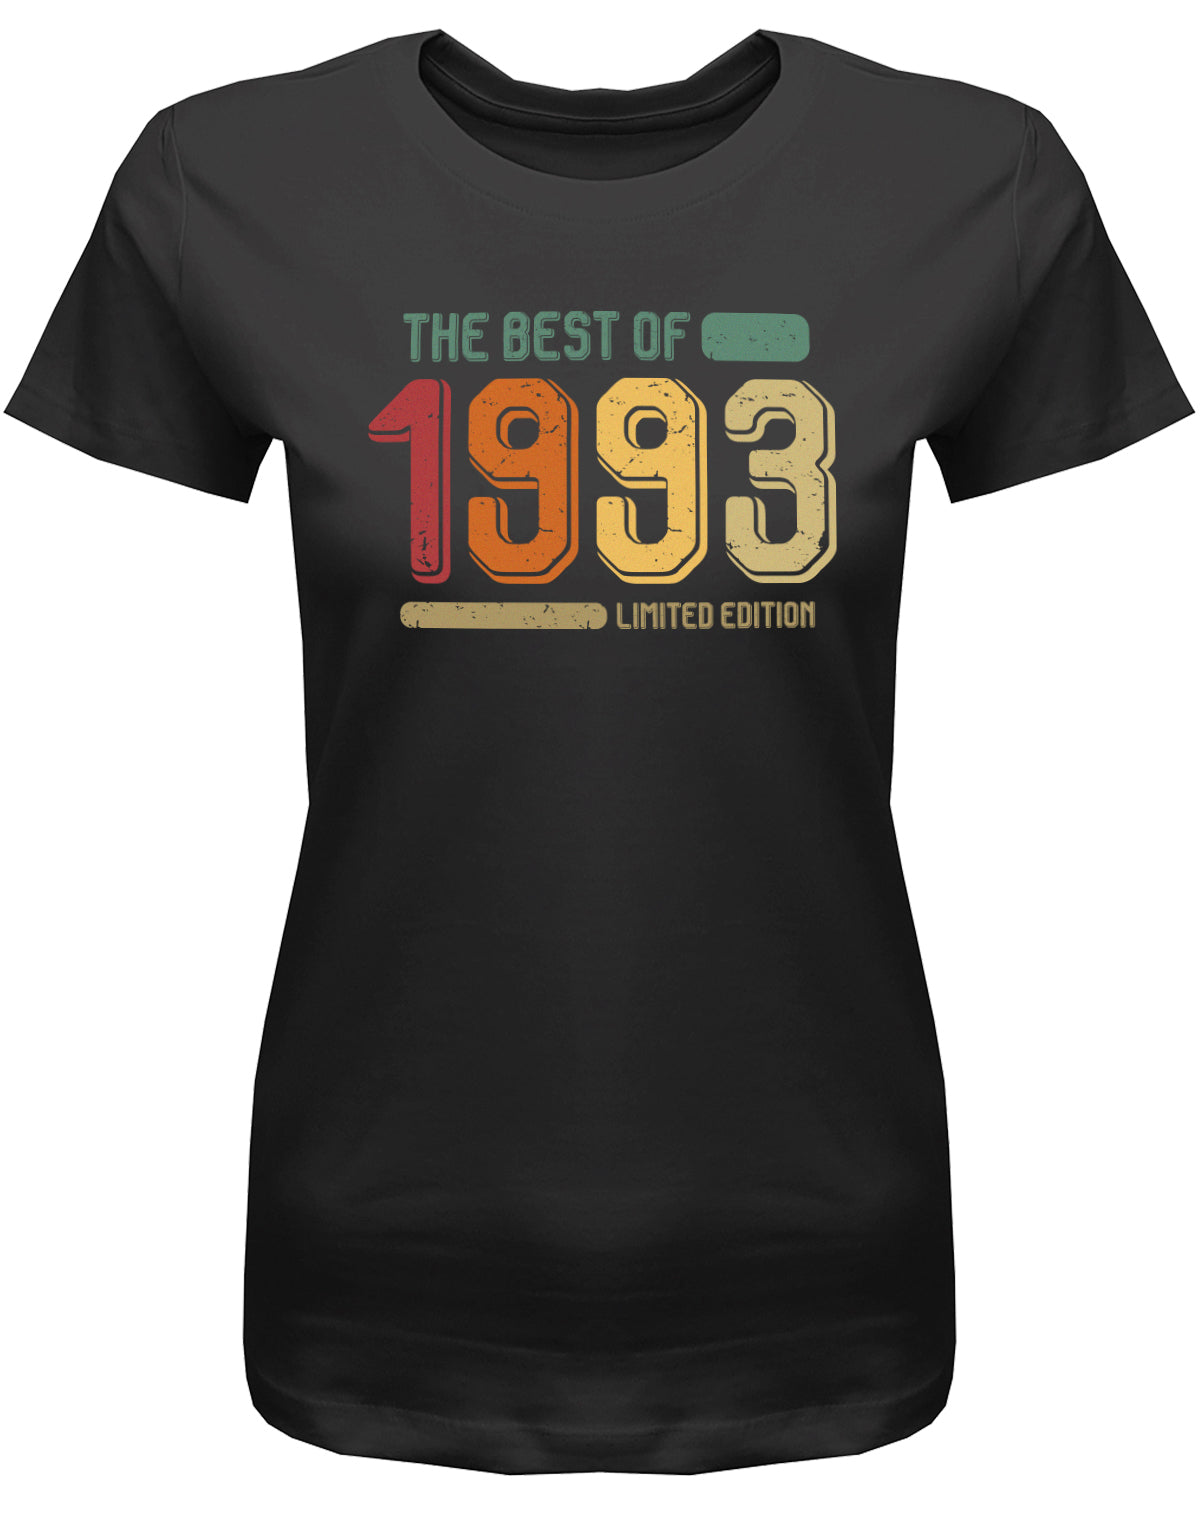 Lustiges T-Shirt zum 30. Geburtstag für die Frau Bedruckt mit: The Best of 1993 Limited Edition Retro Vintage ✓ Geschenk zum 30 geburtstag Frau ✓ 1993 geburtstag Frau ✓ 30 Geburtstag tshirt ✓ shirt geburtstag 30 Schwarz